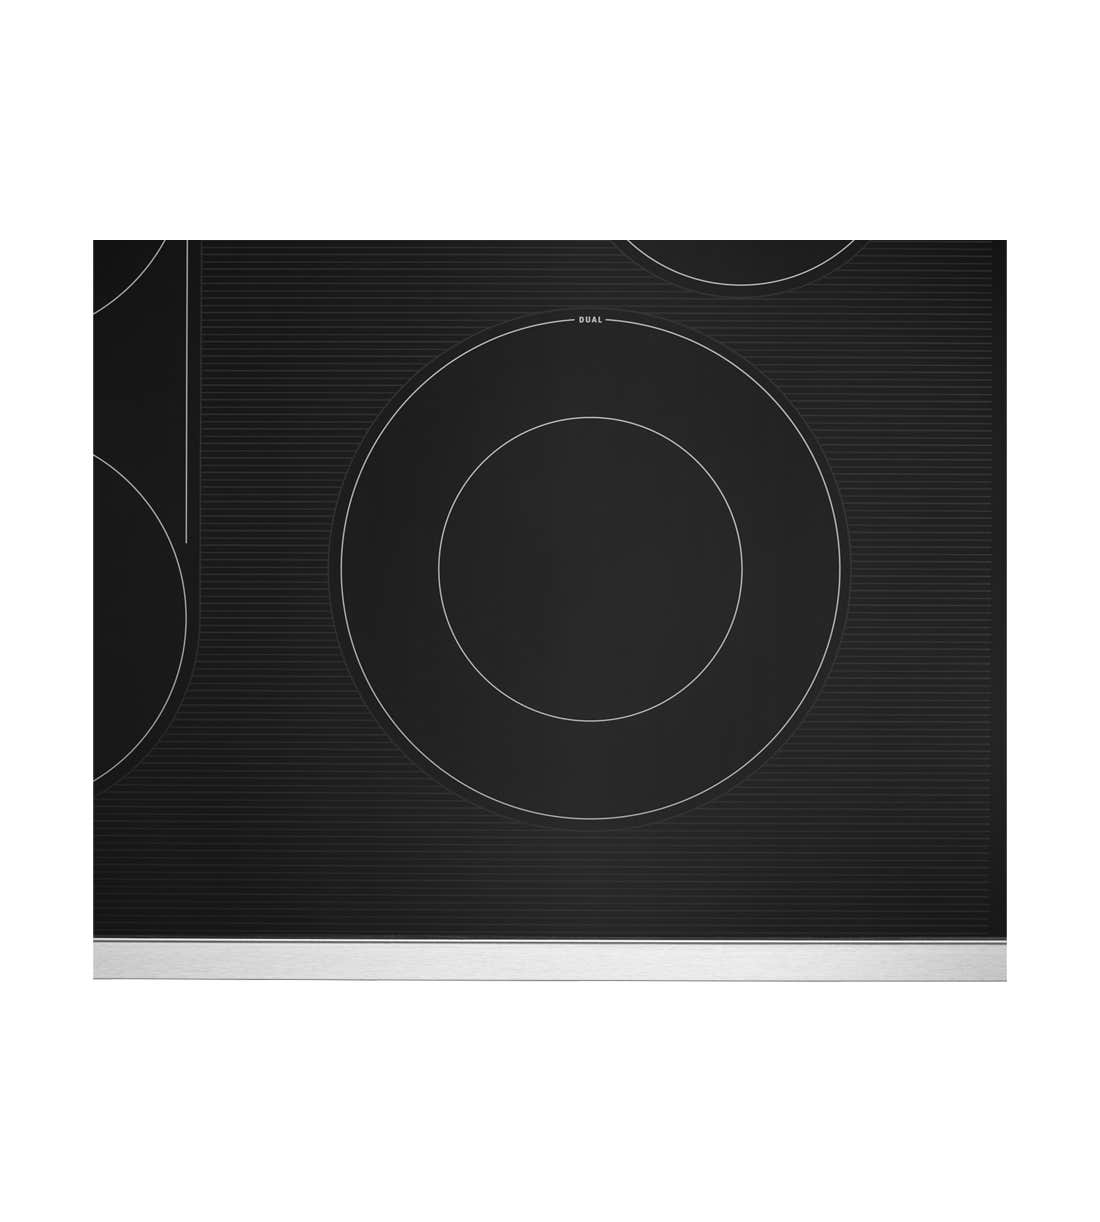 Plaque de cuisson Maytag MEC8830HS Vitro-céramique radiant  4 éléments  presenté par Corbeil